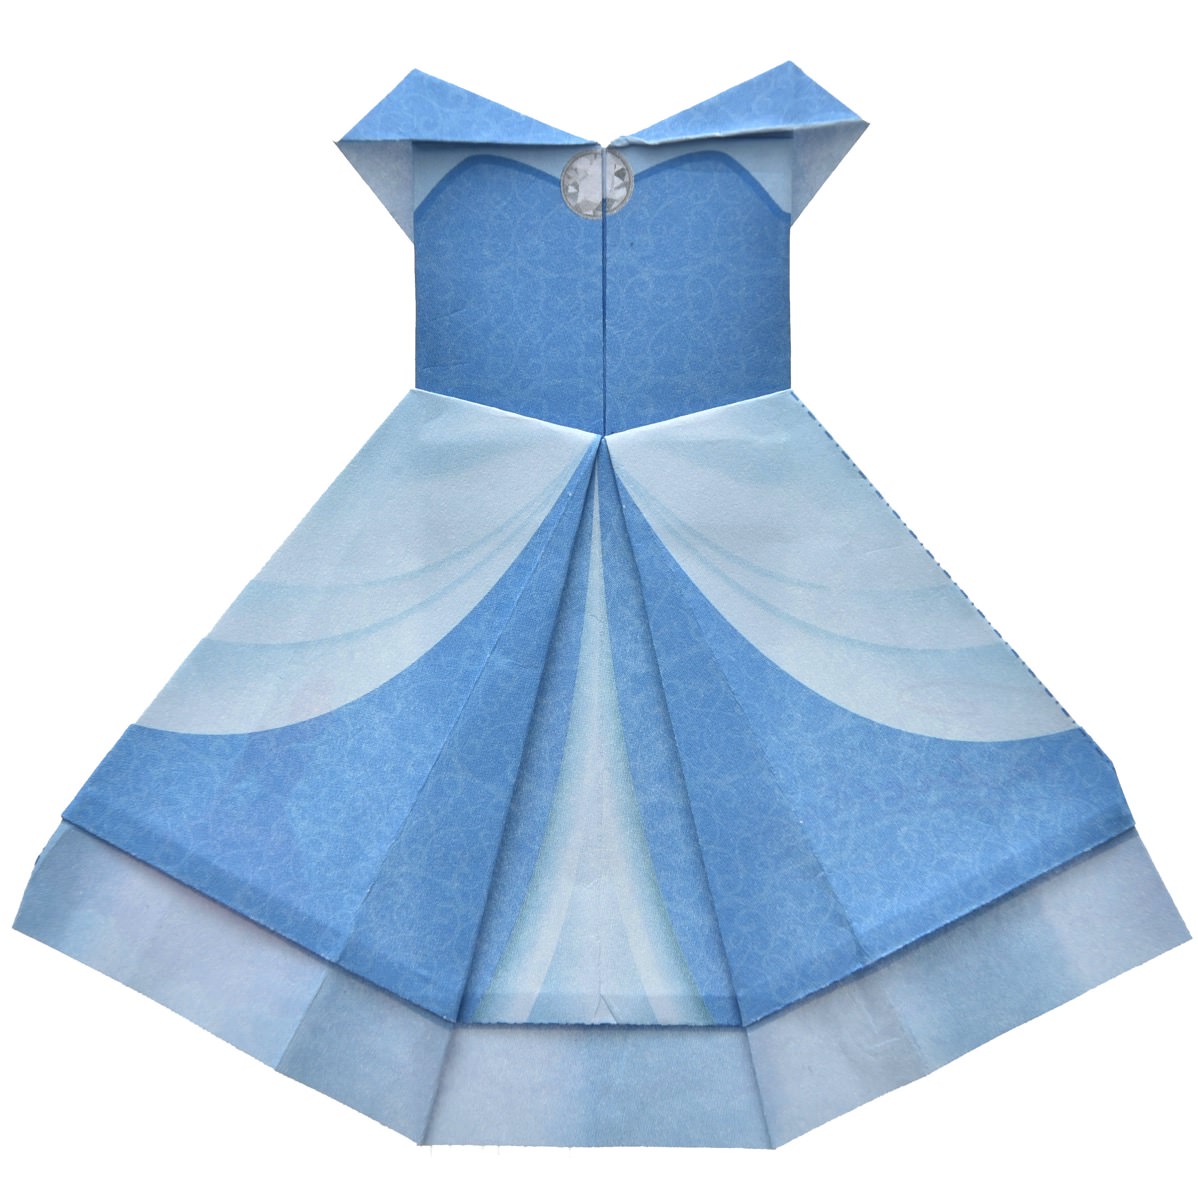 ディズニープリンセスたちのドレスが折れる ディズニーランドの折り紙メモセット